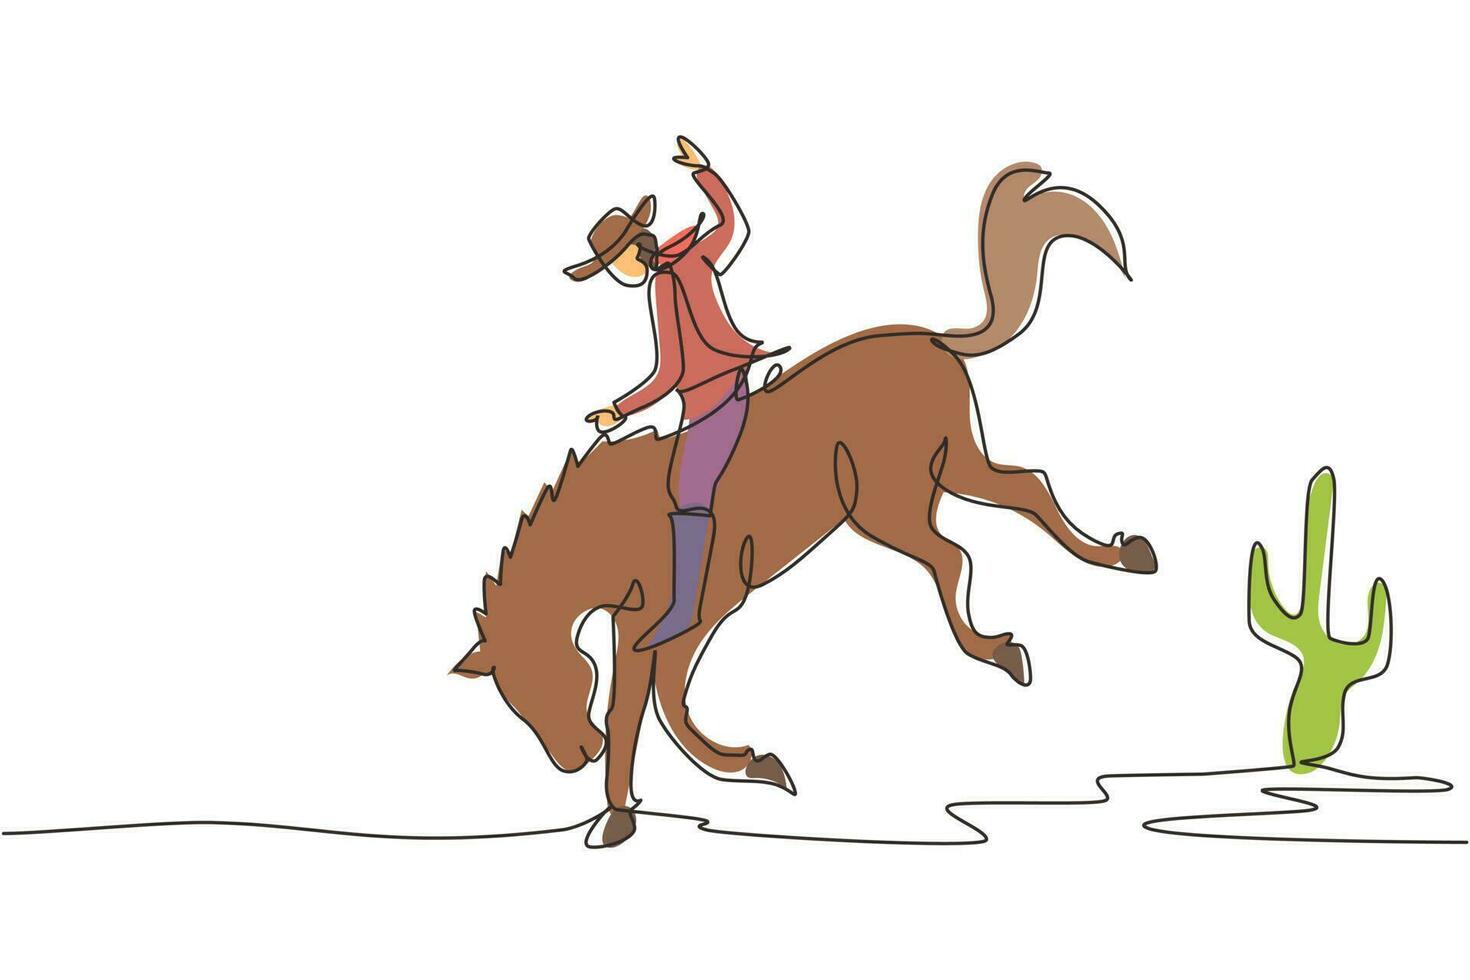 único desenho de linha contínua cowboy no cavalo selvagem mustang. vaqueiro de rodeio cavalgando cavalo selvagem na placa de madeira. cowboy montando corrida de cavalos selvagens. ilustração em vetor design gráfico de desenho gráfico de uma linha dinâmica